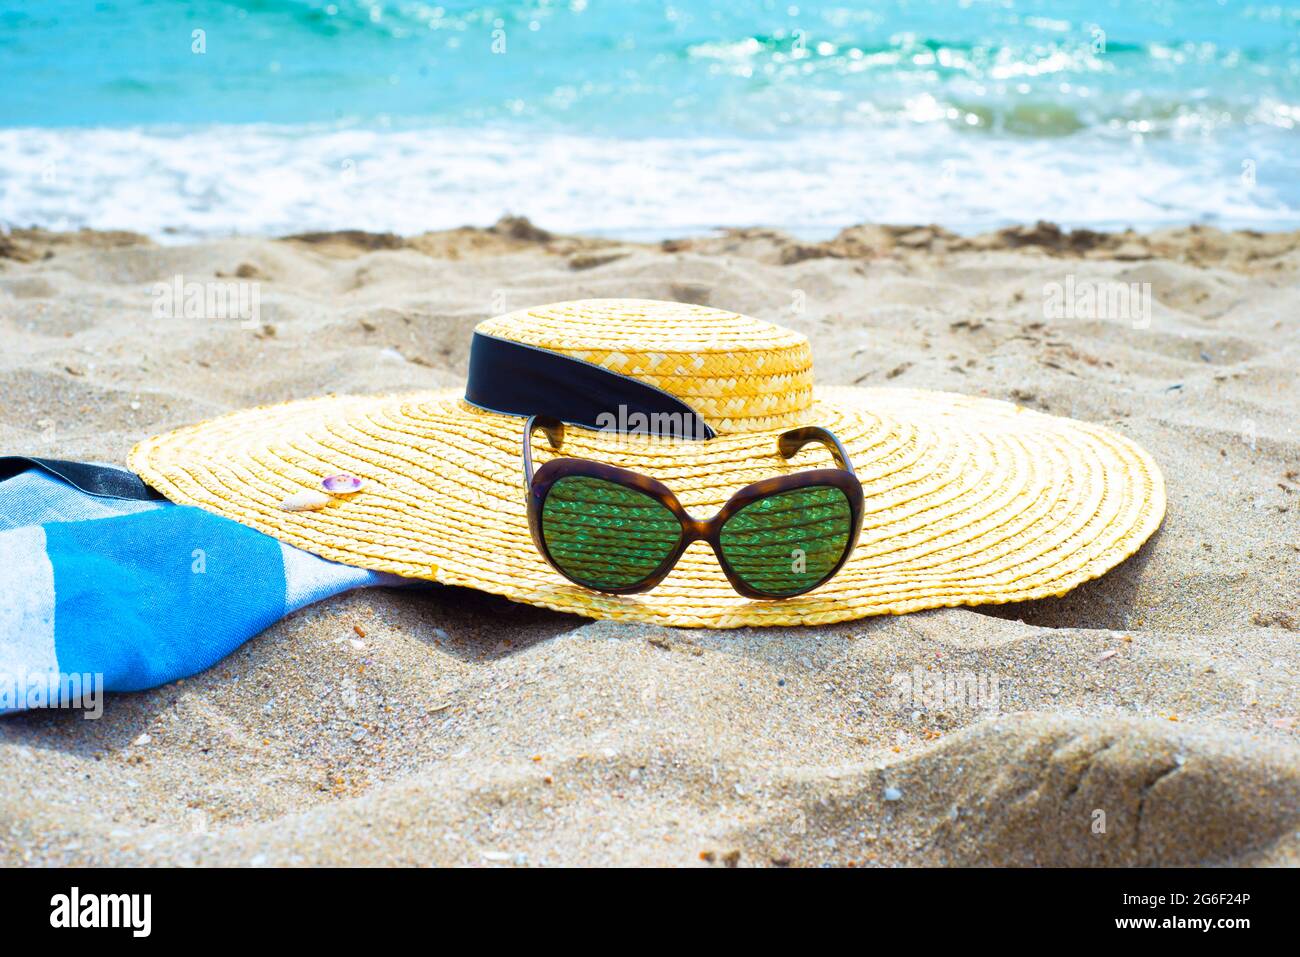 Accessoires de protection contre le soleil sur une plage de sable au bord de l'eau. Chapeau de paille avec ruban. Lunettes de soleil. Serviette en paréo de coton. Banque D'Images